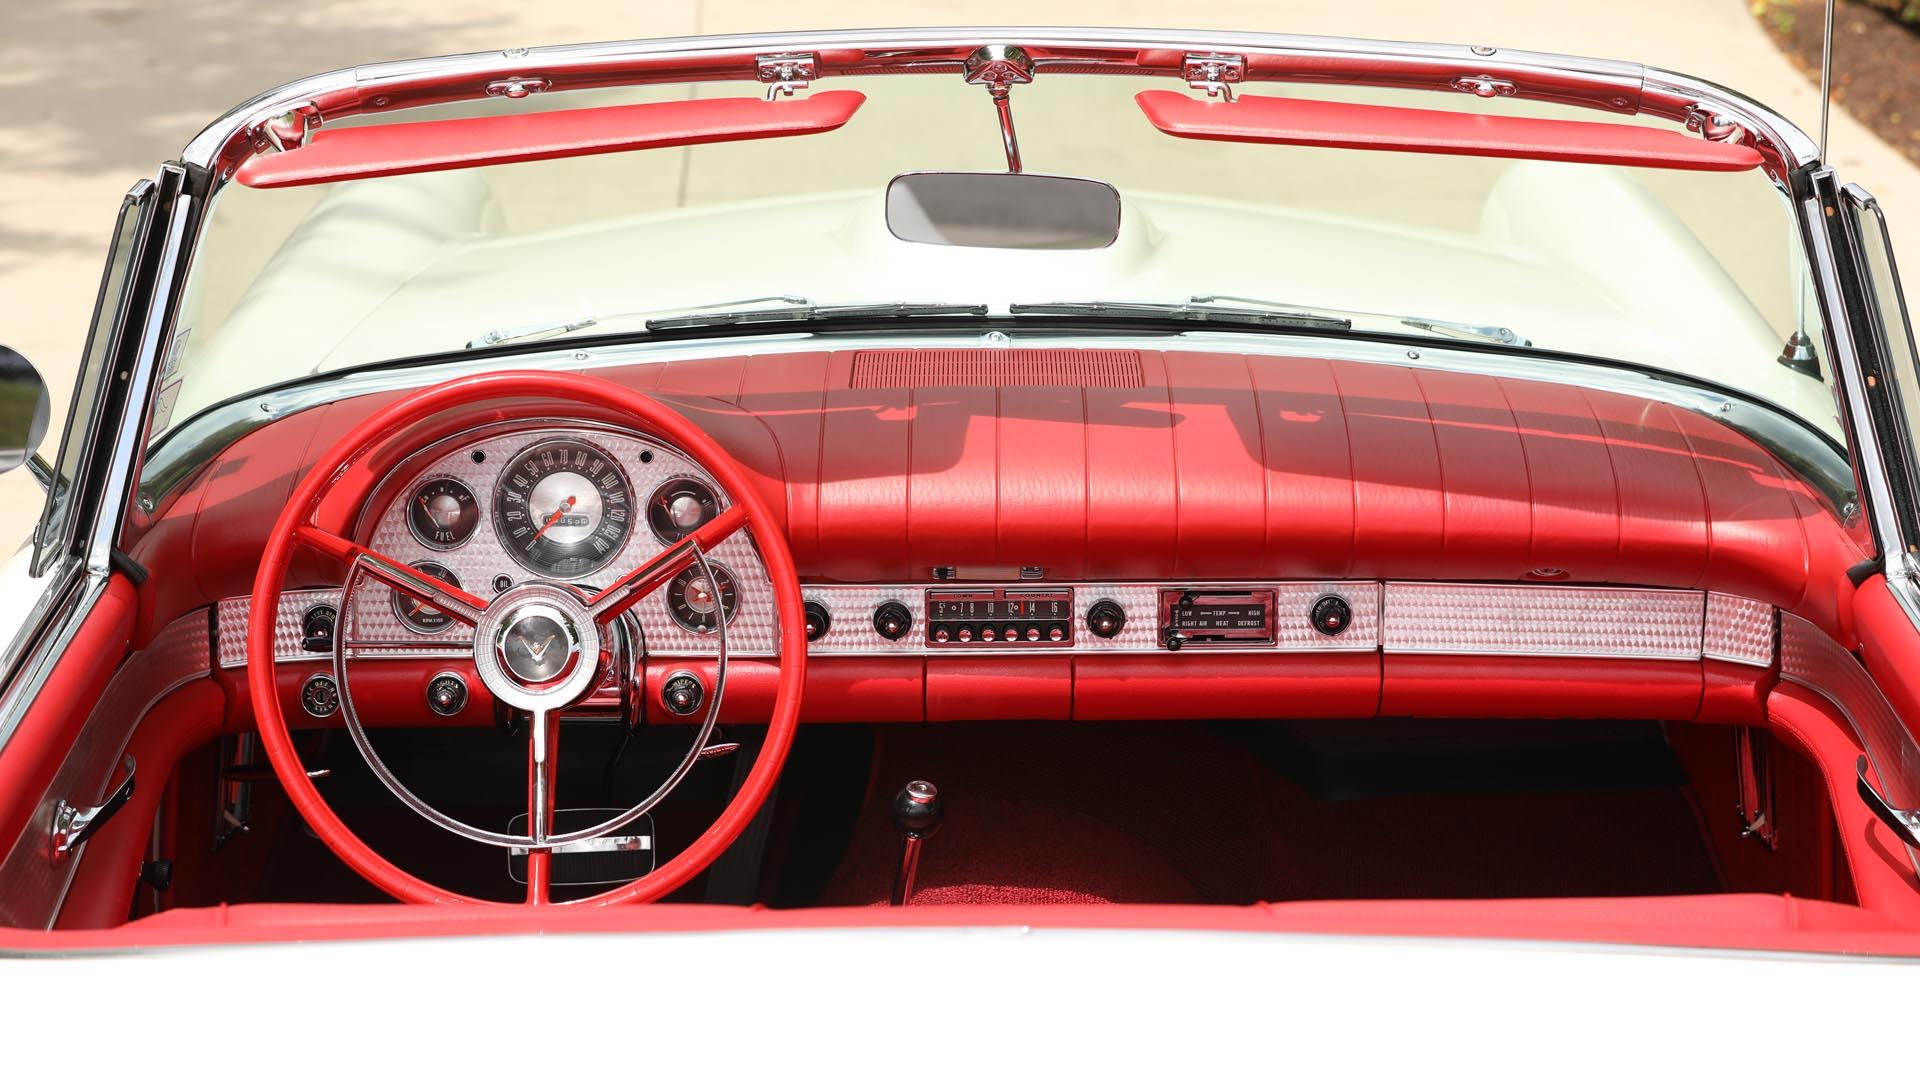 1957 Ford Thunderbird 'E Code' Convertible